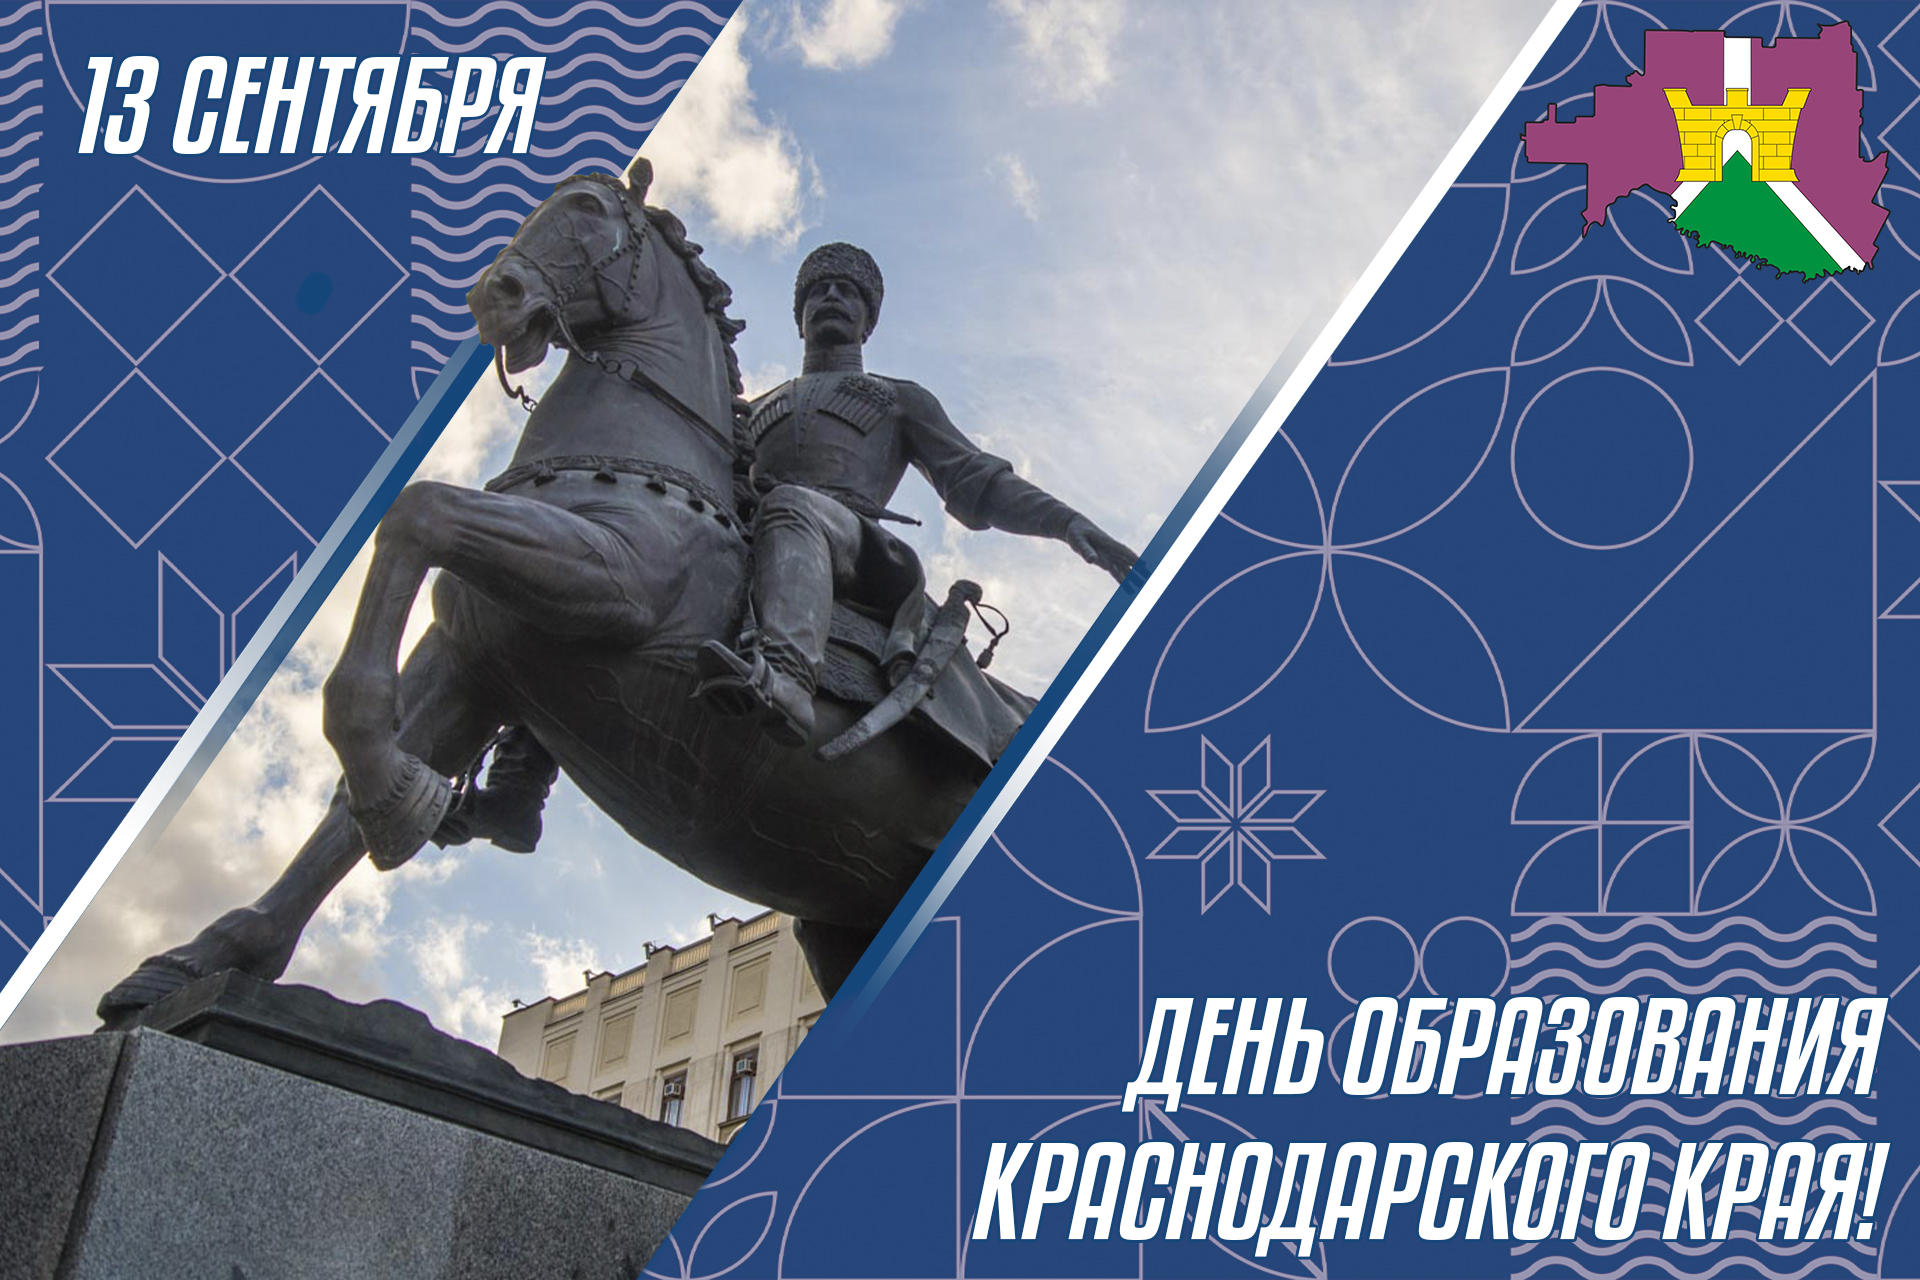 13 сентября - день образования Краснодарского края